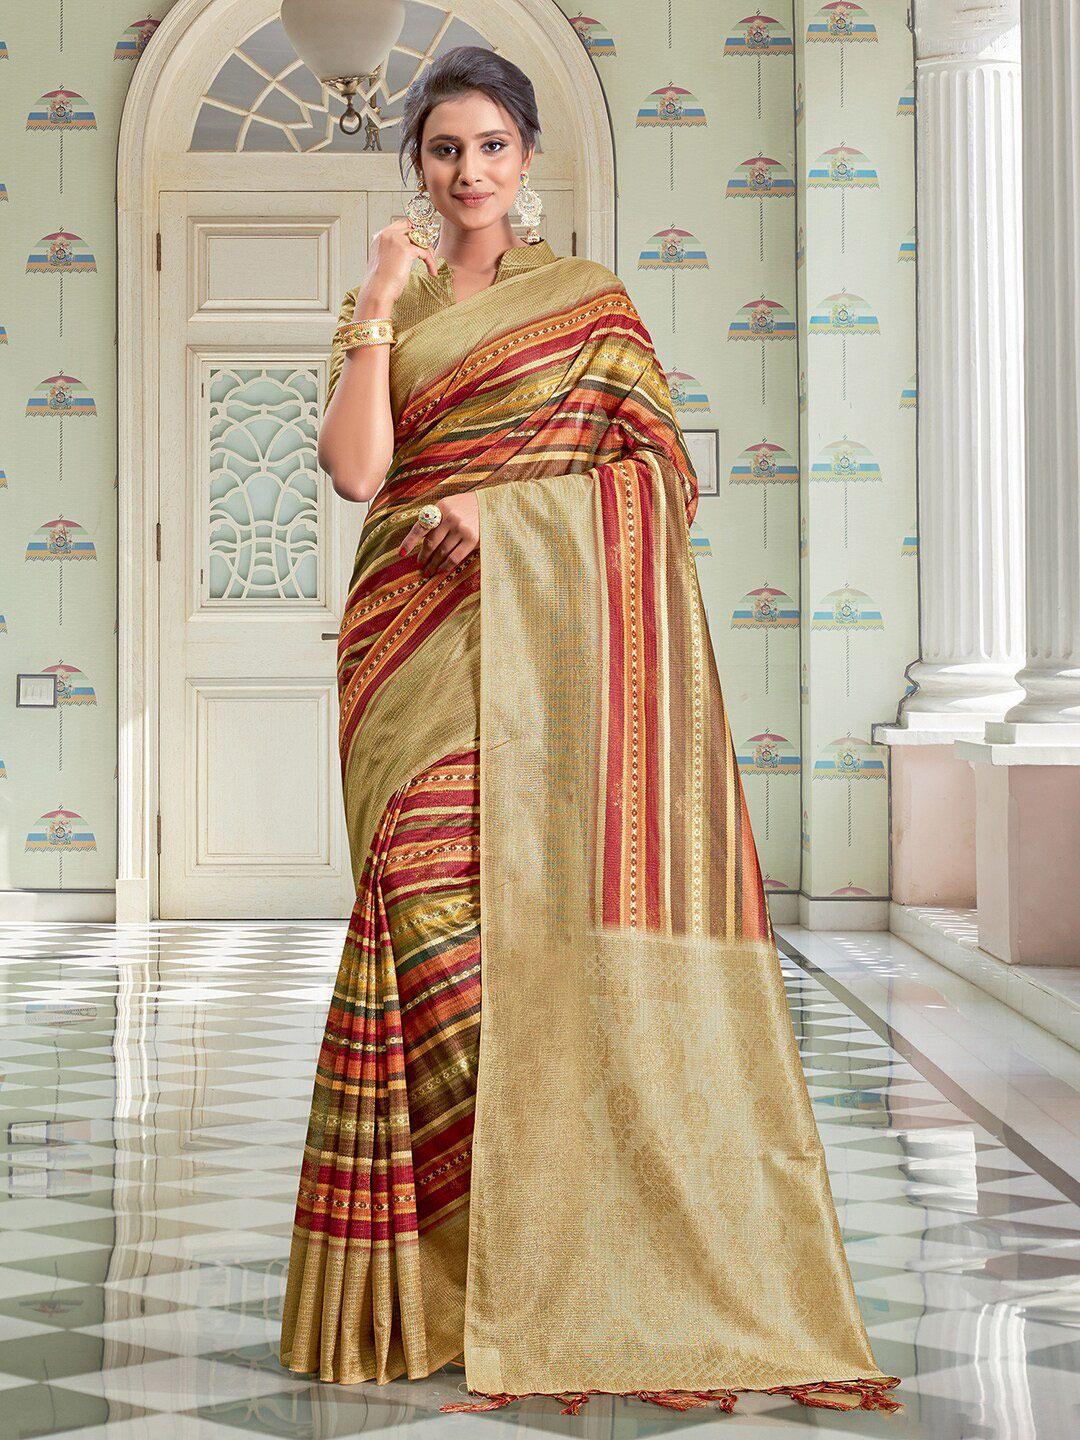 saree mall pink & gold-toned striped block print sarees